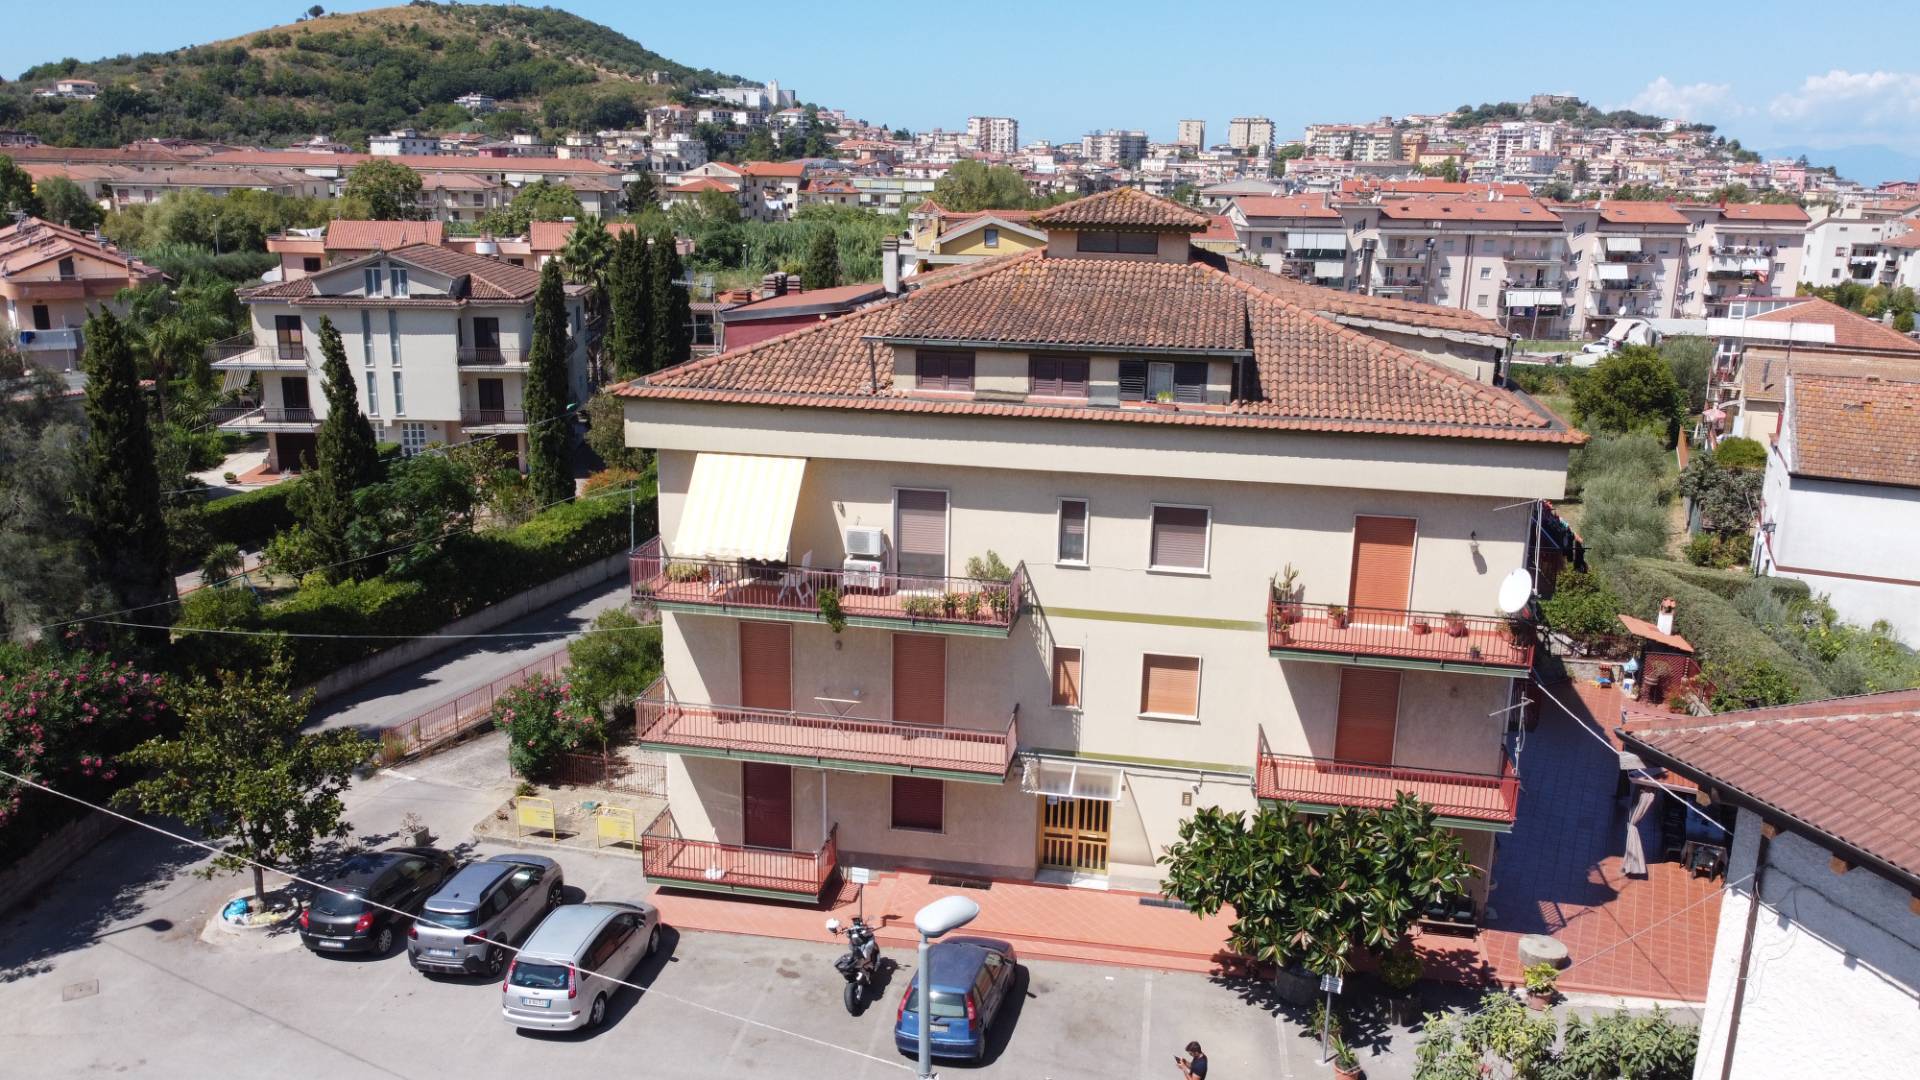 Appartamento in vendita a Agropoli, 5 locali, prezzo € 110.000 | CambioCasa.it